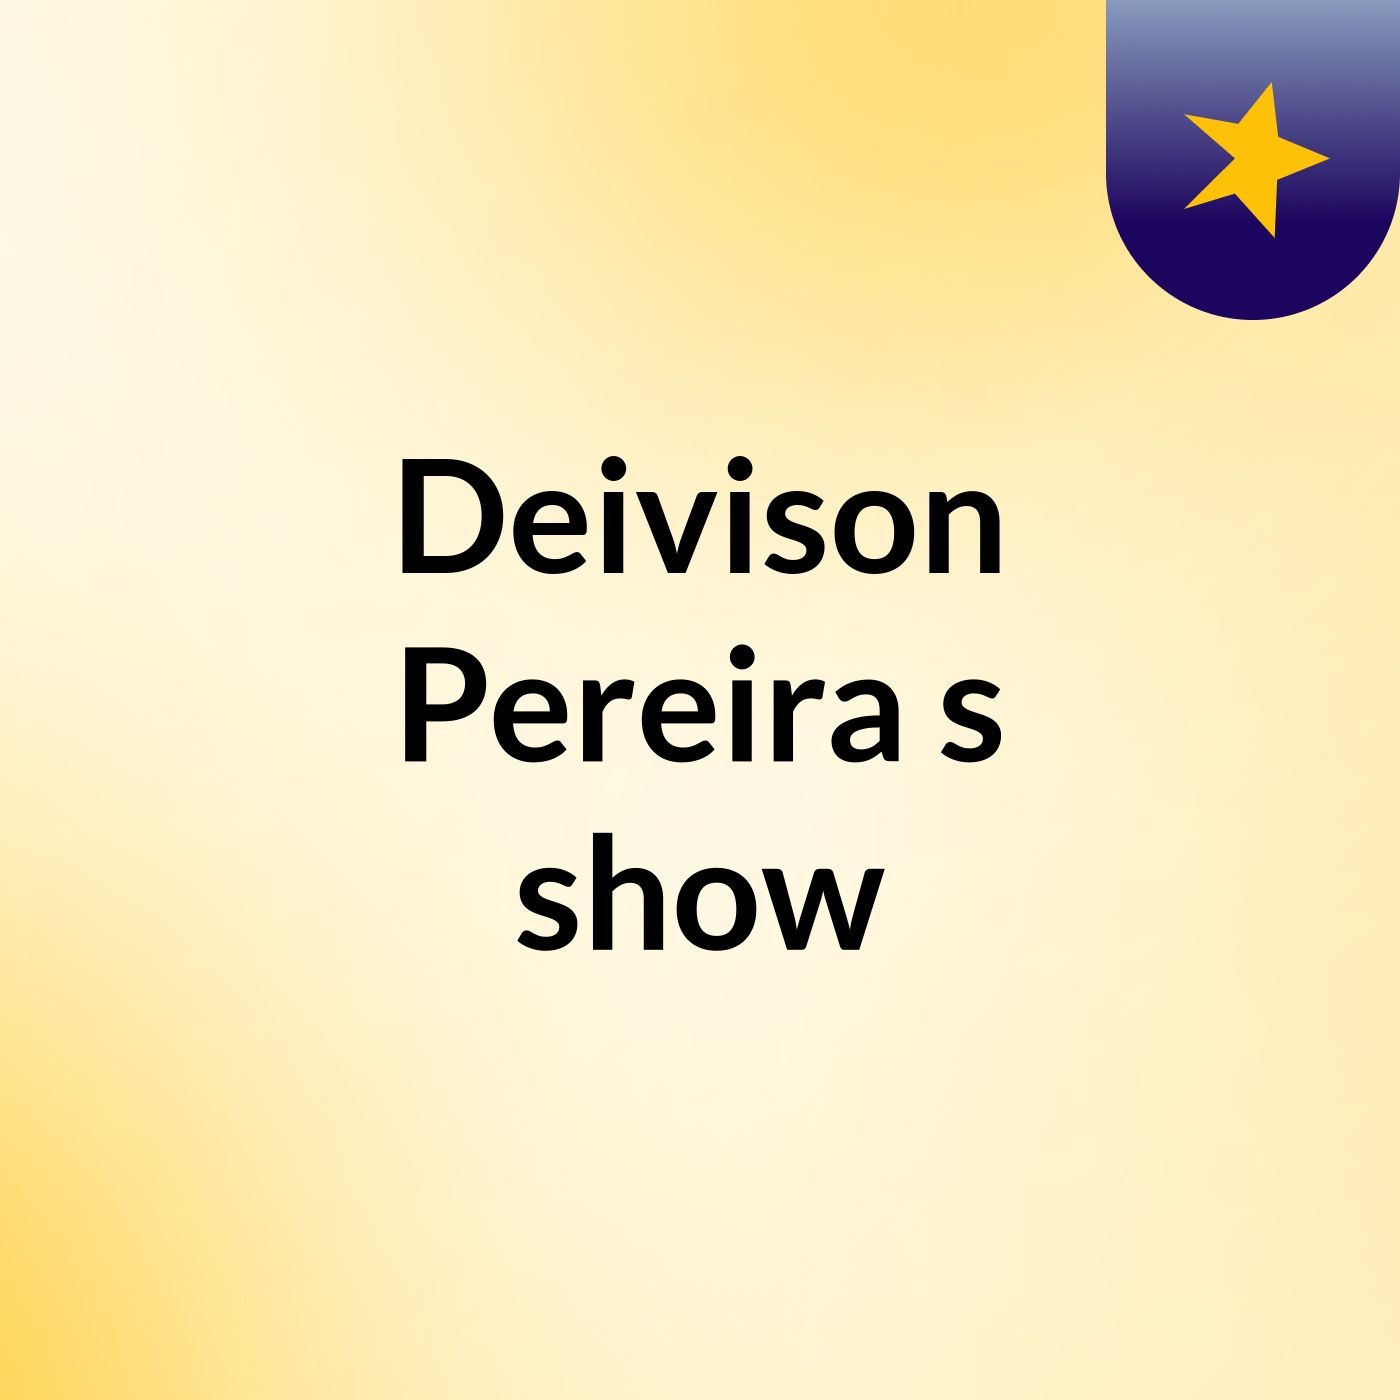 Deivison Pereira's show